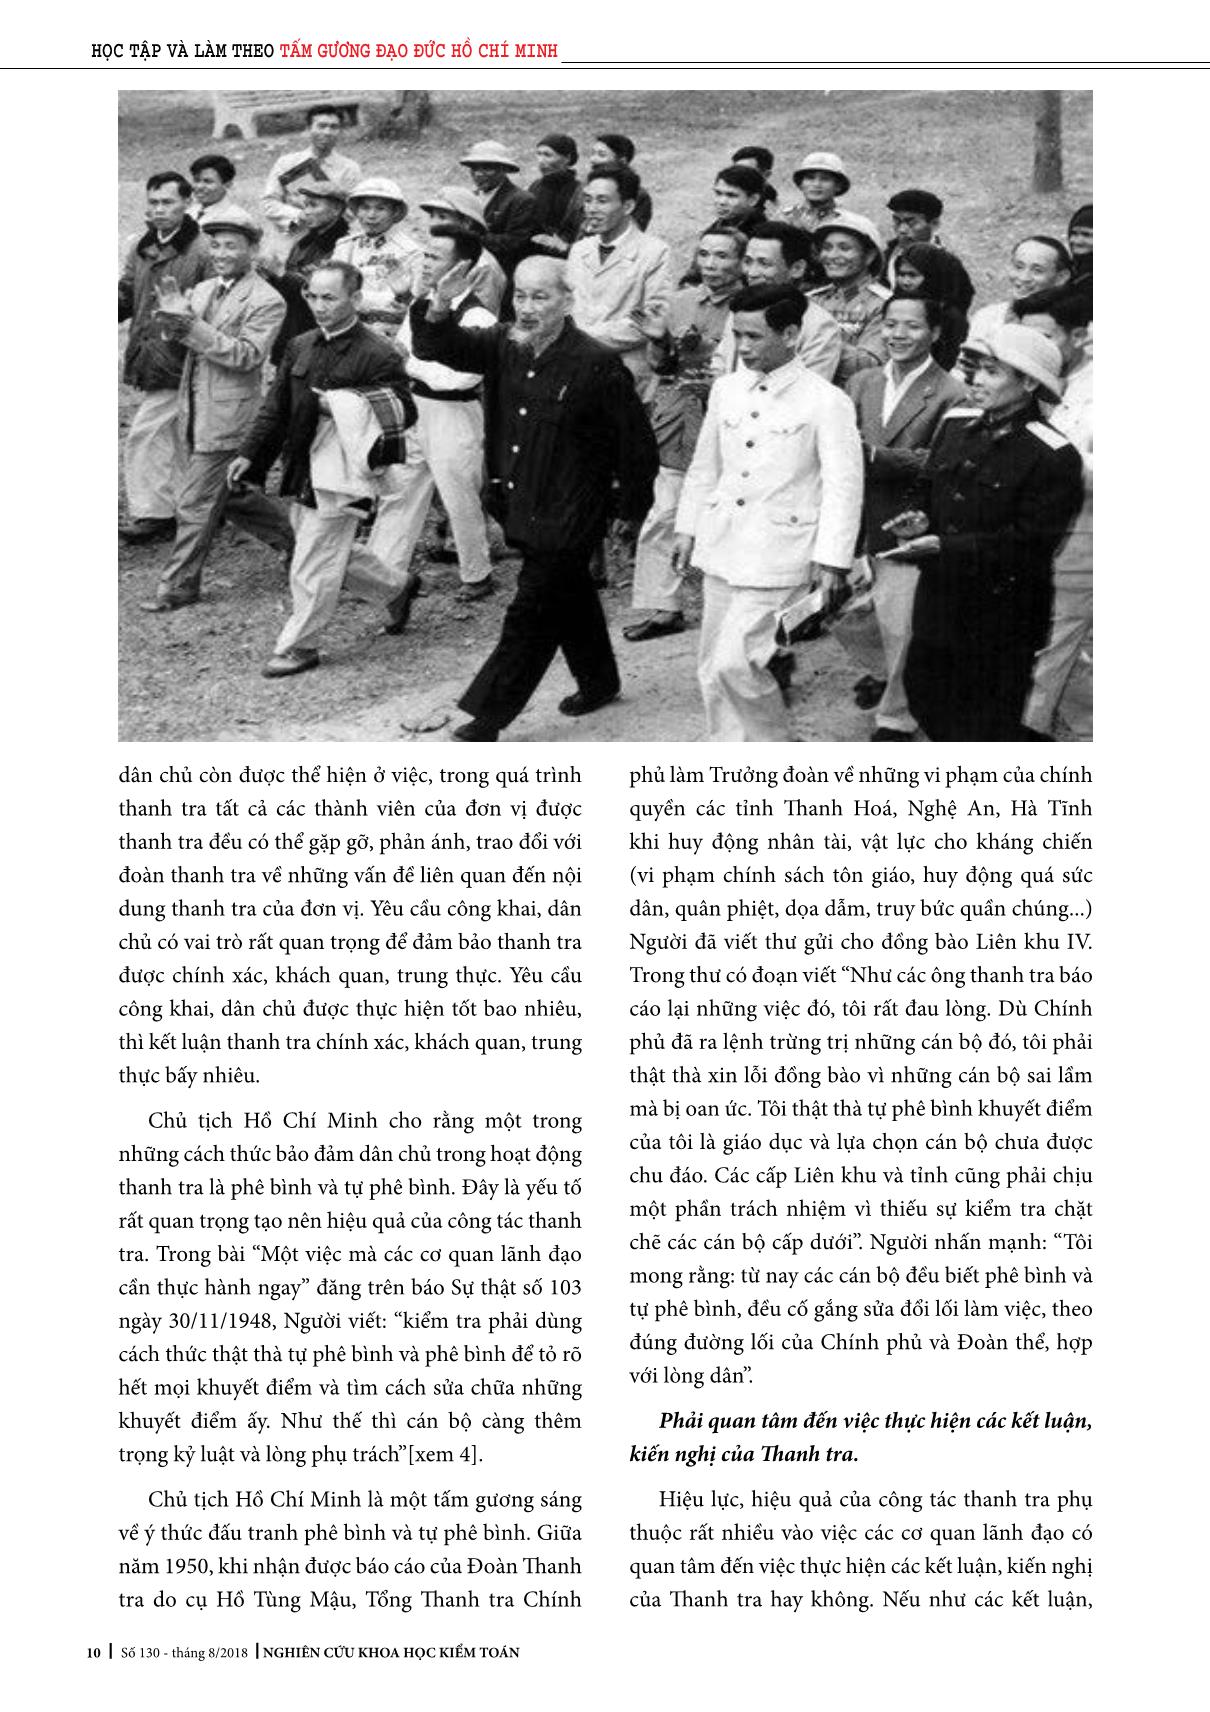 Tư tưởng Hồ Chí Minh về công tác thanh tra trang 5